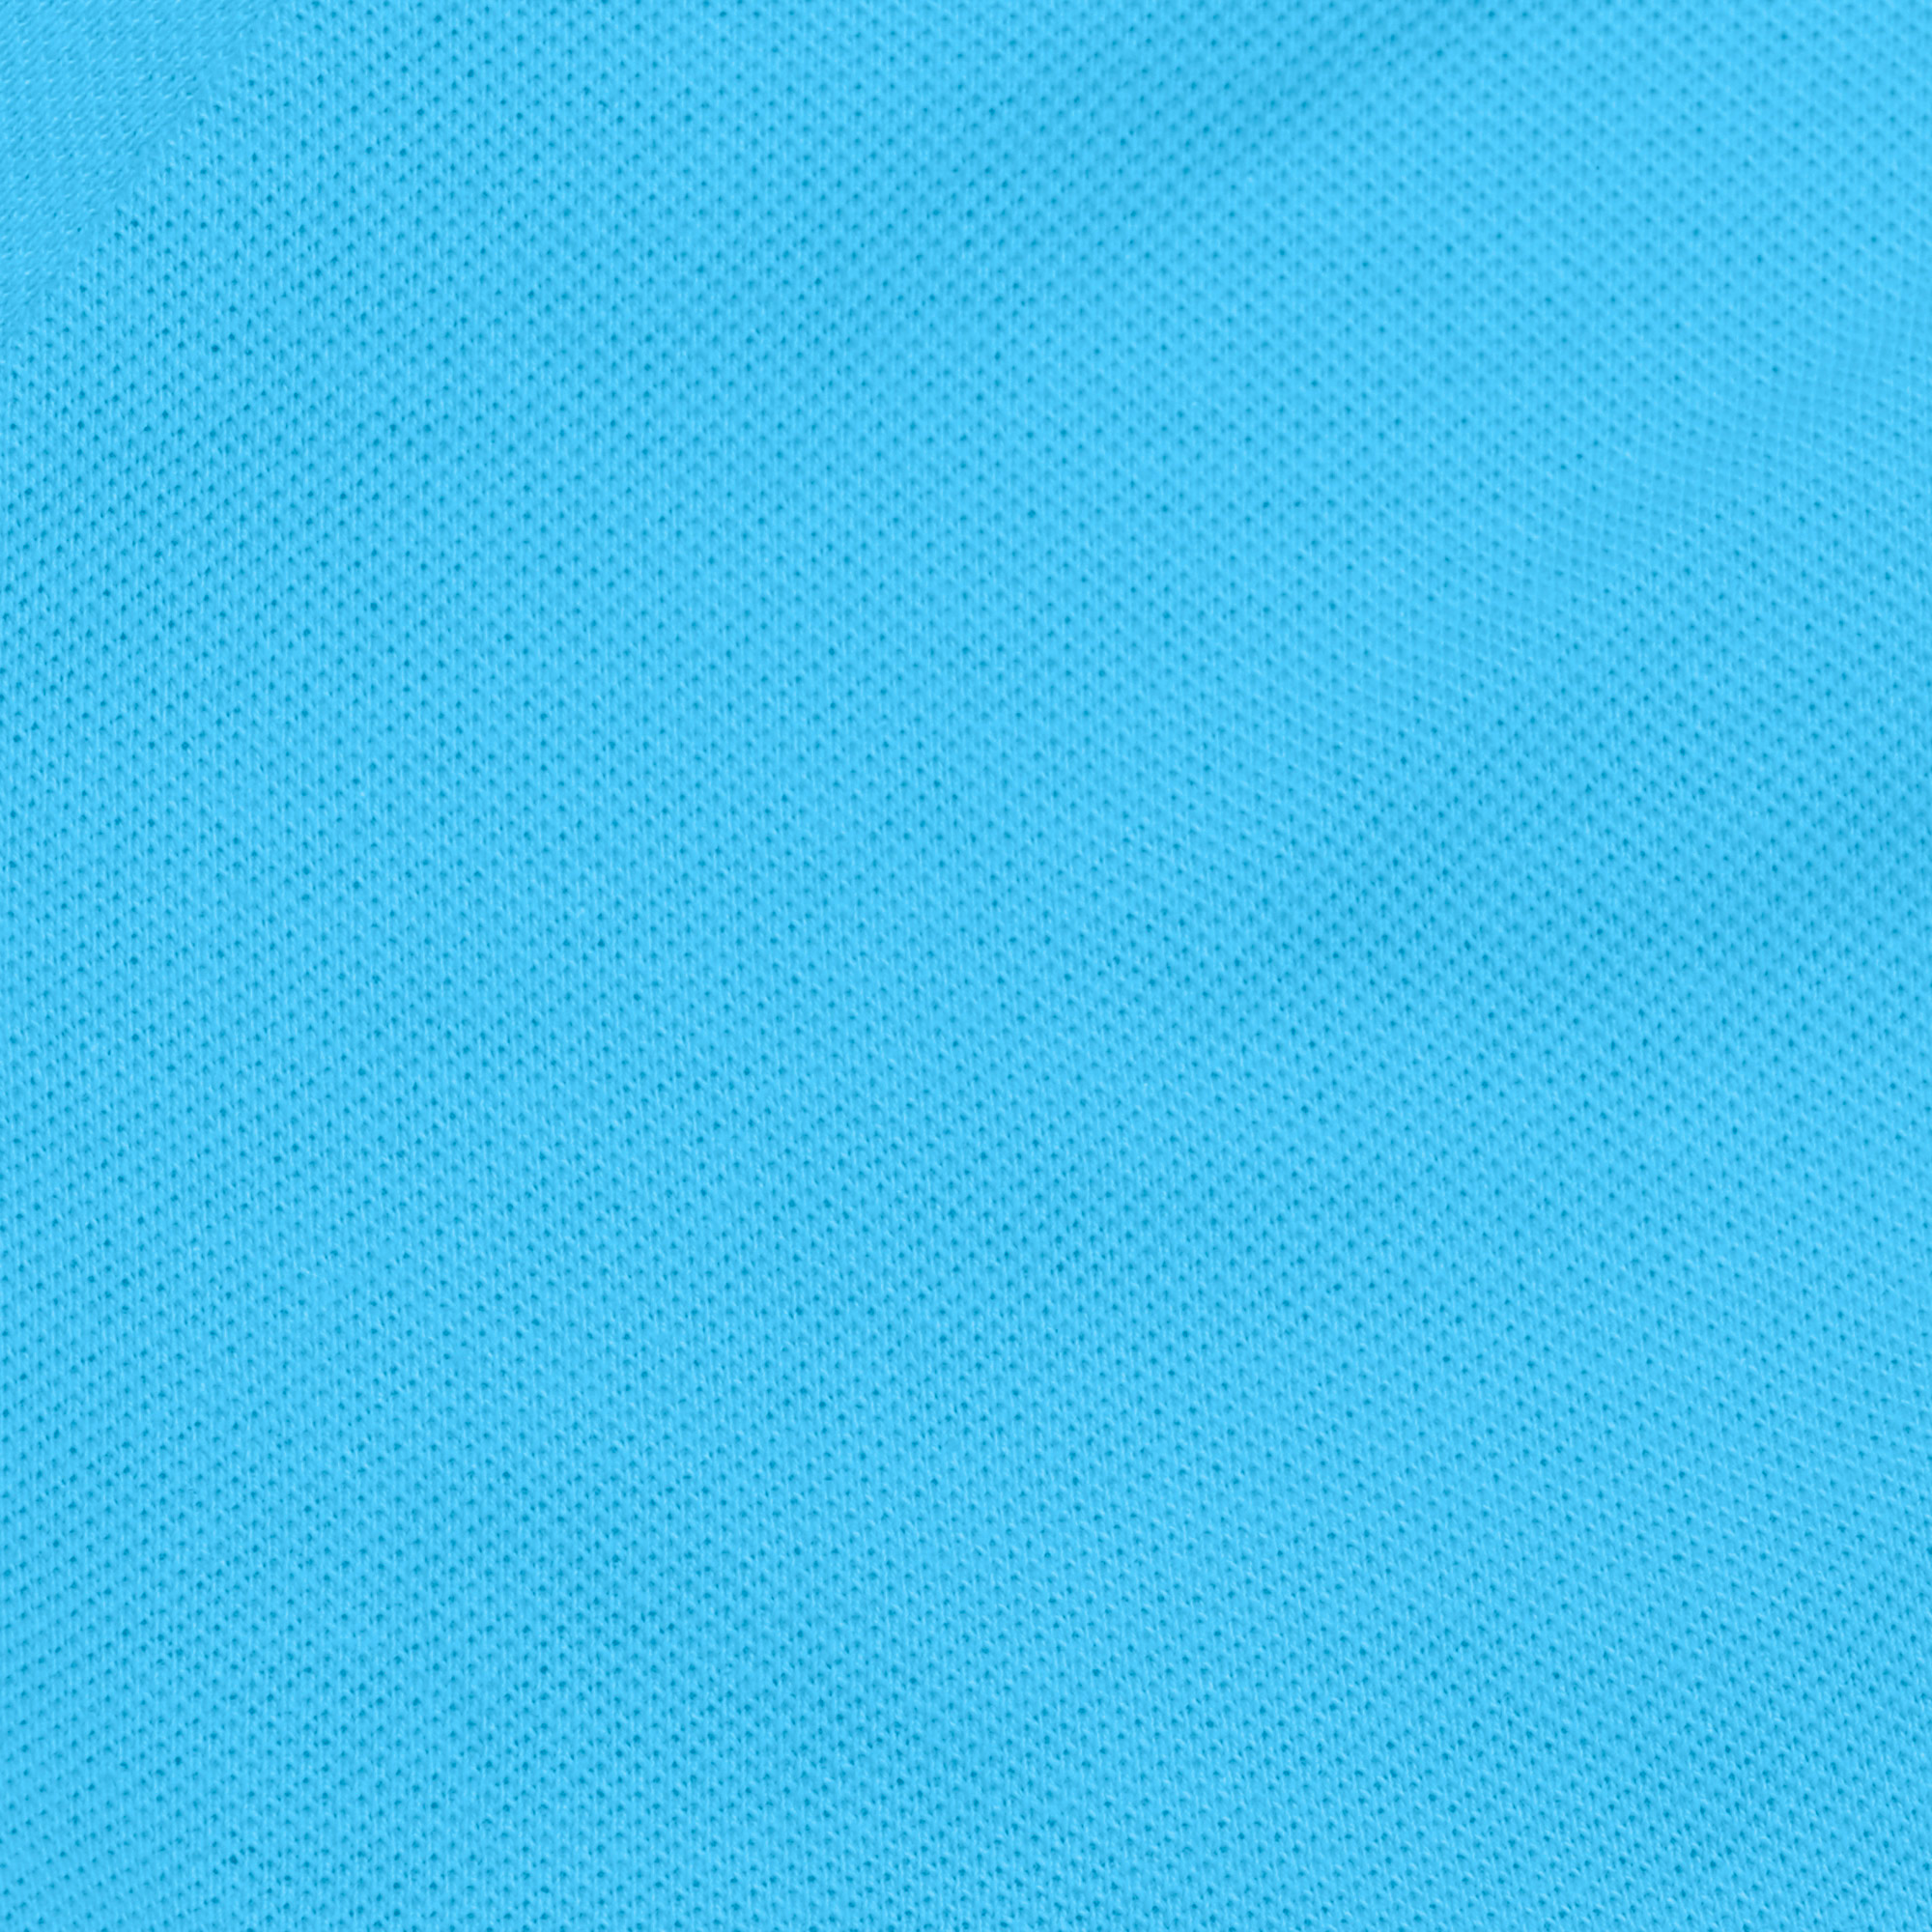 Футболка-поло AMADEY с коротким рукавом XXL бирюзовая, цвет бирюзовый, размер XXL - фото 3